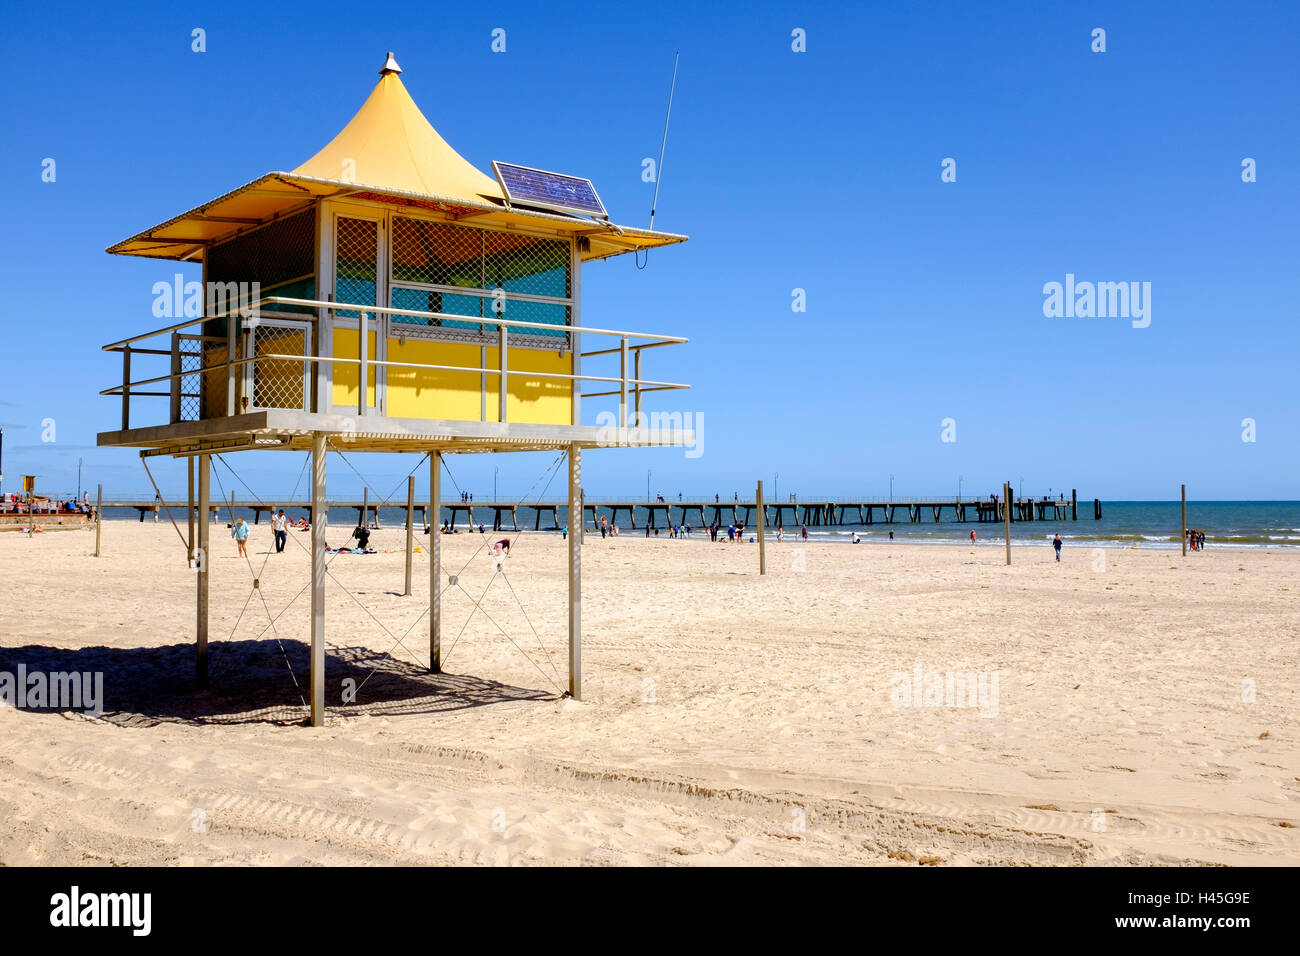 Ein Bademeister Turm in Glenelg, dem beliebtesten Strand in South Australia und Seaside Entertainment Bereich. Stockfoto